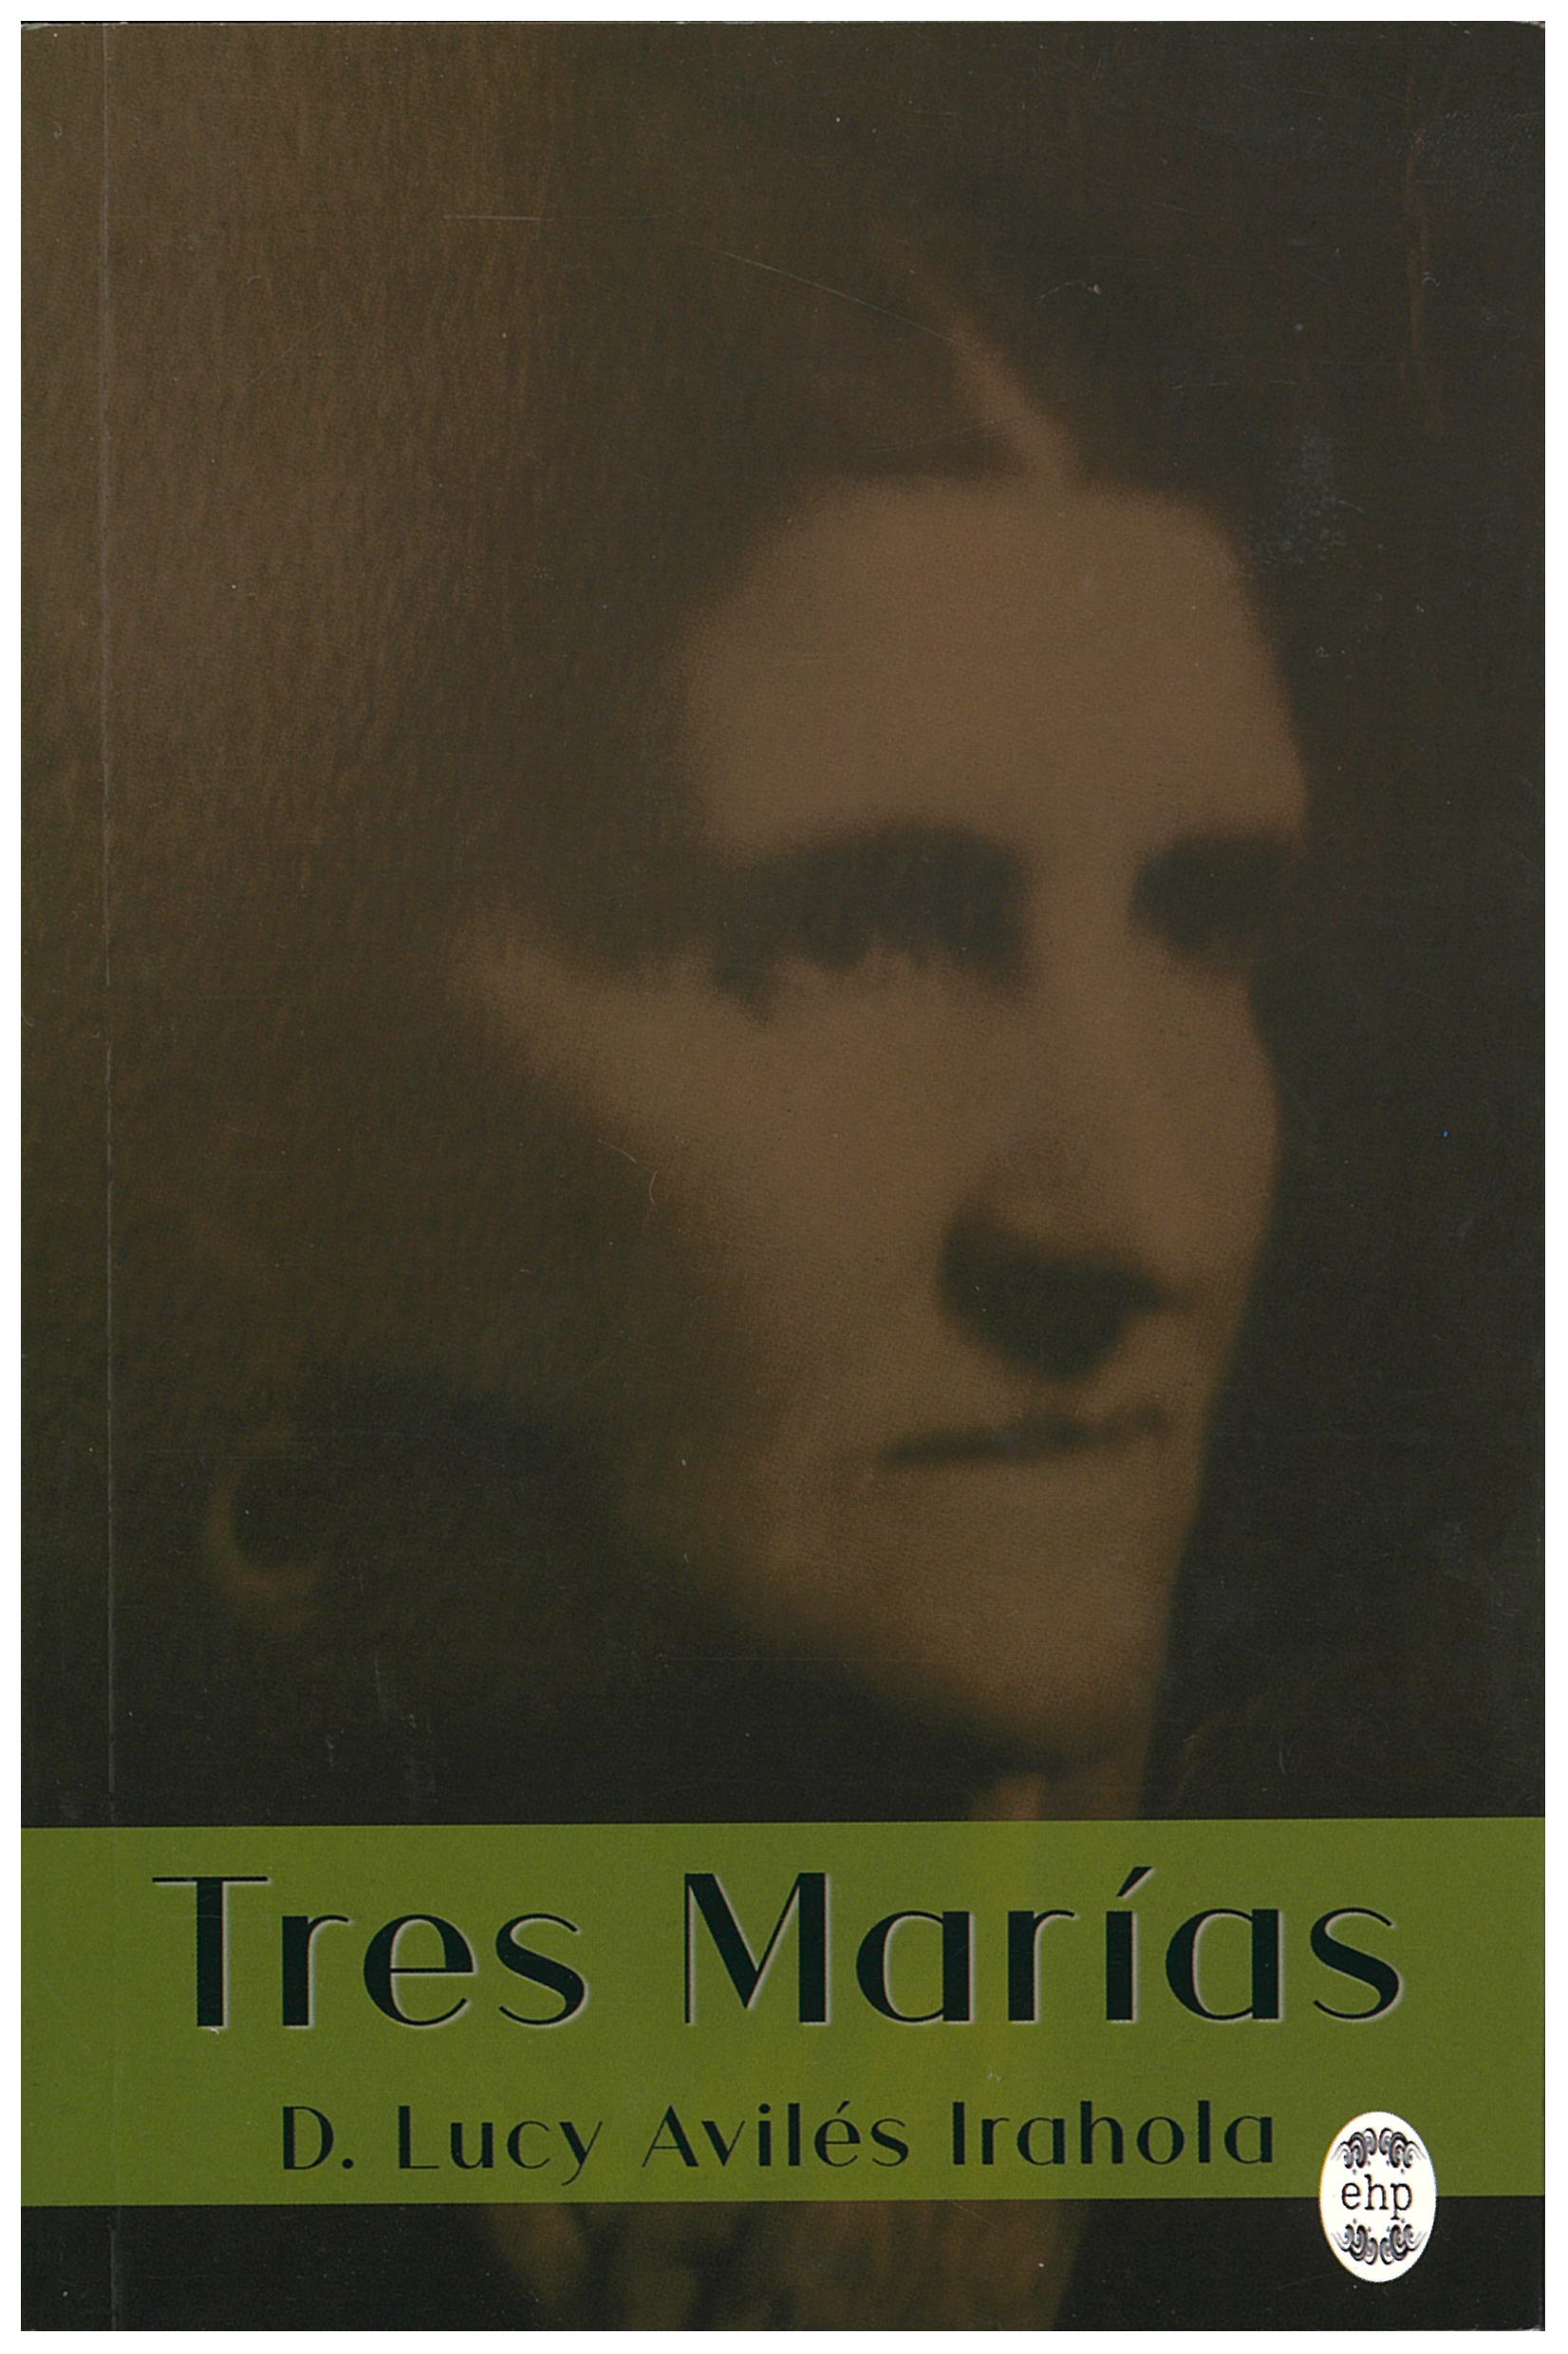 Lesung des Romans "Tres Marias" - Lectura de la novela "Tres Marías"